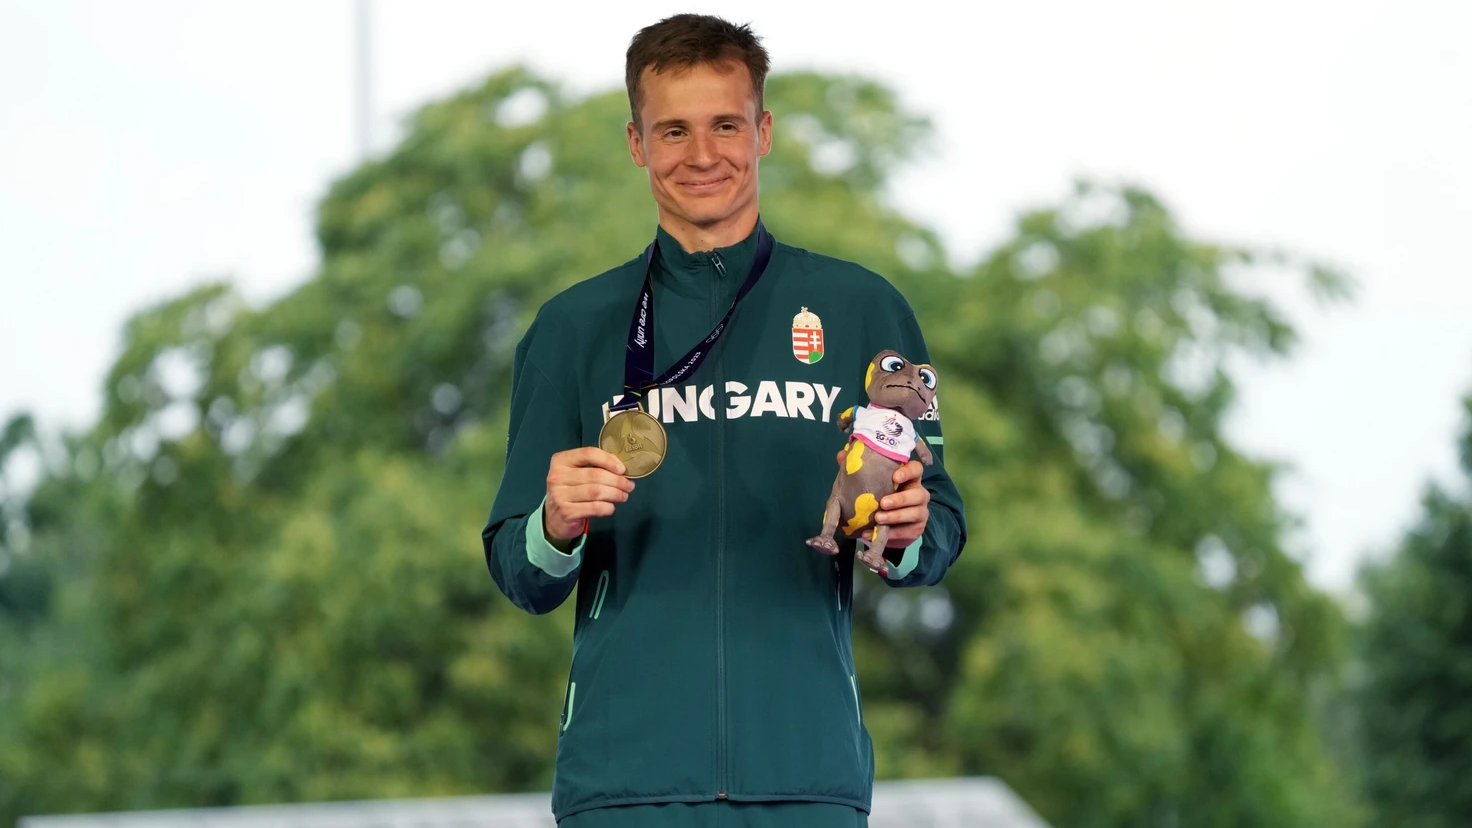 Bőhm Csaba egyelőre a vb-re készül, de a cél számára az olimpia